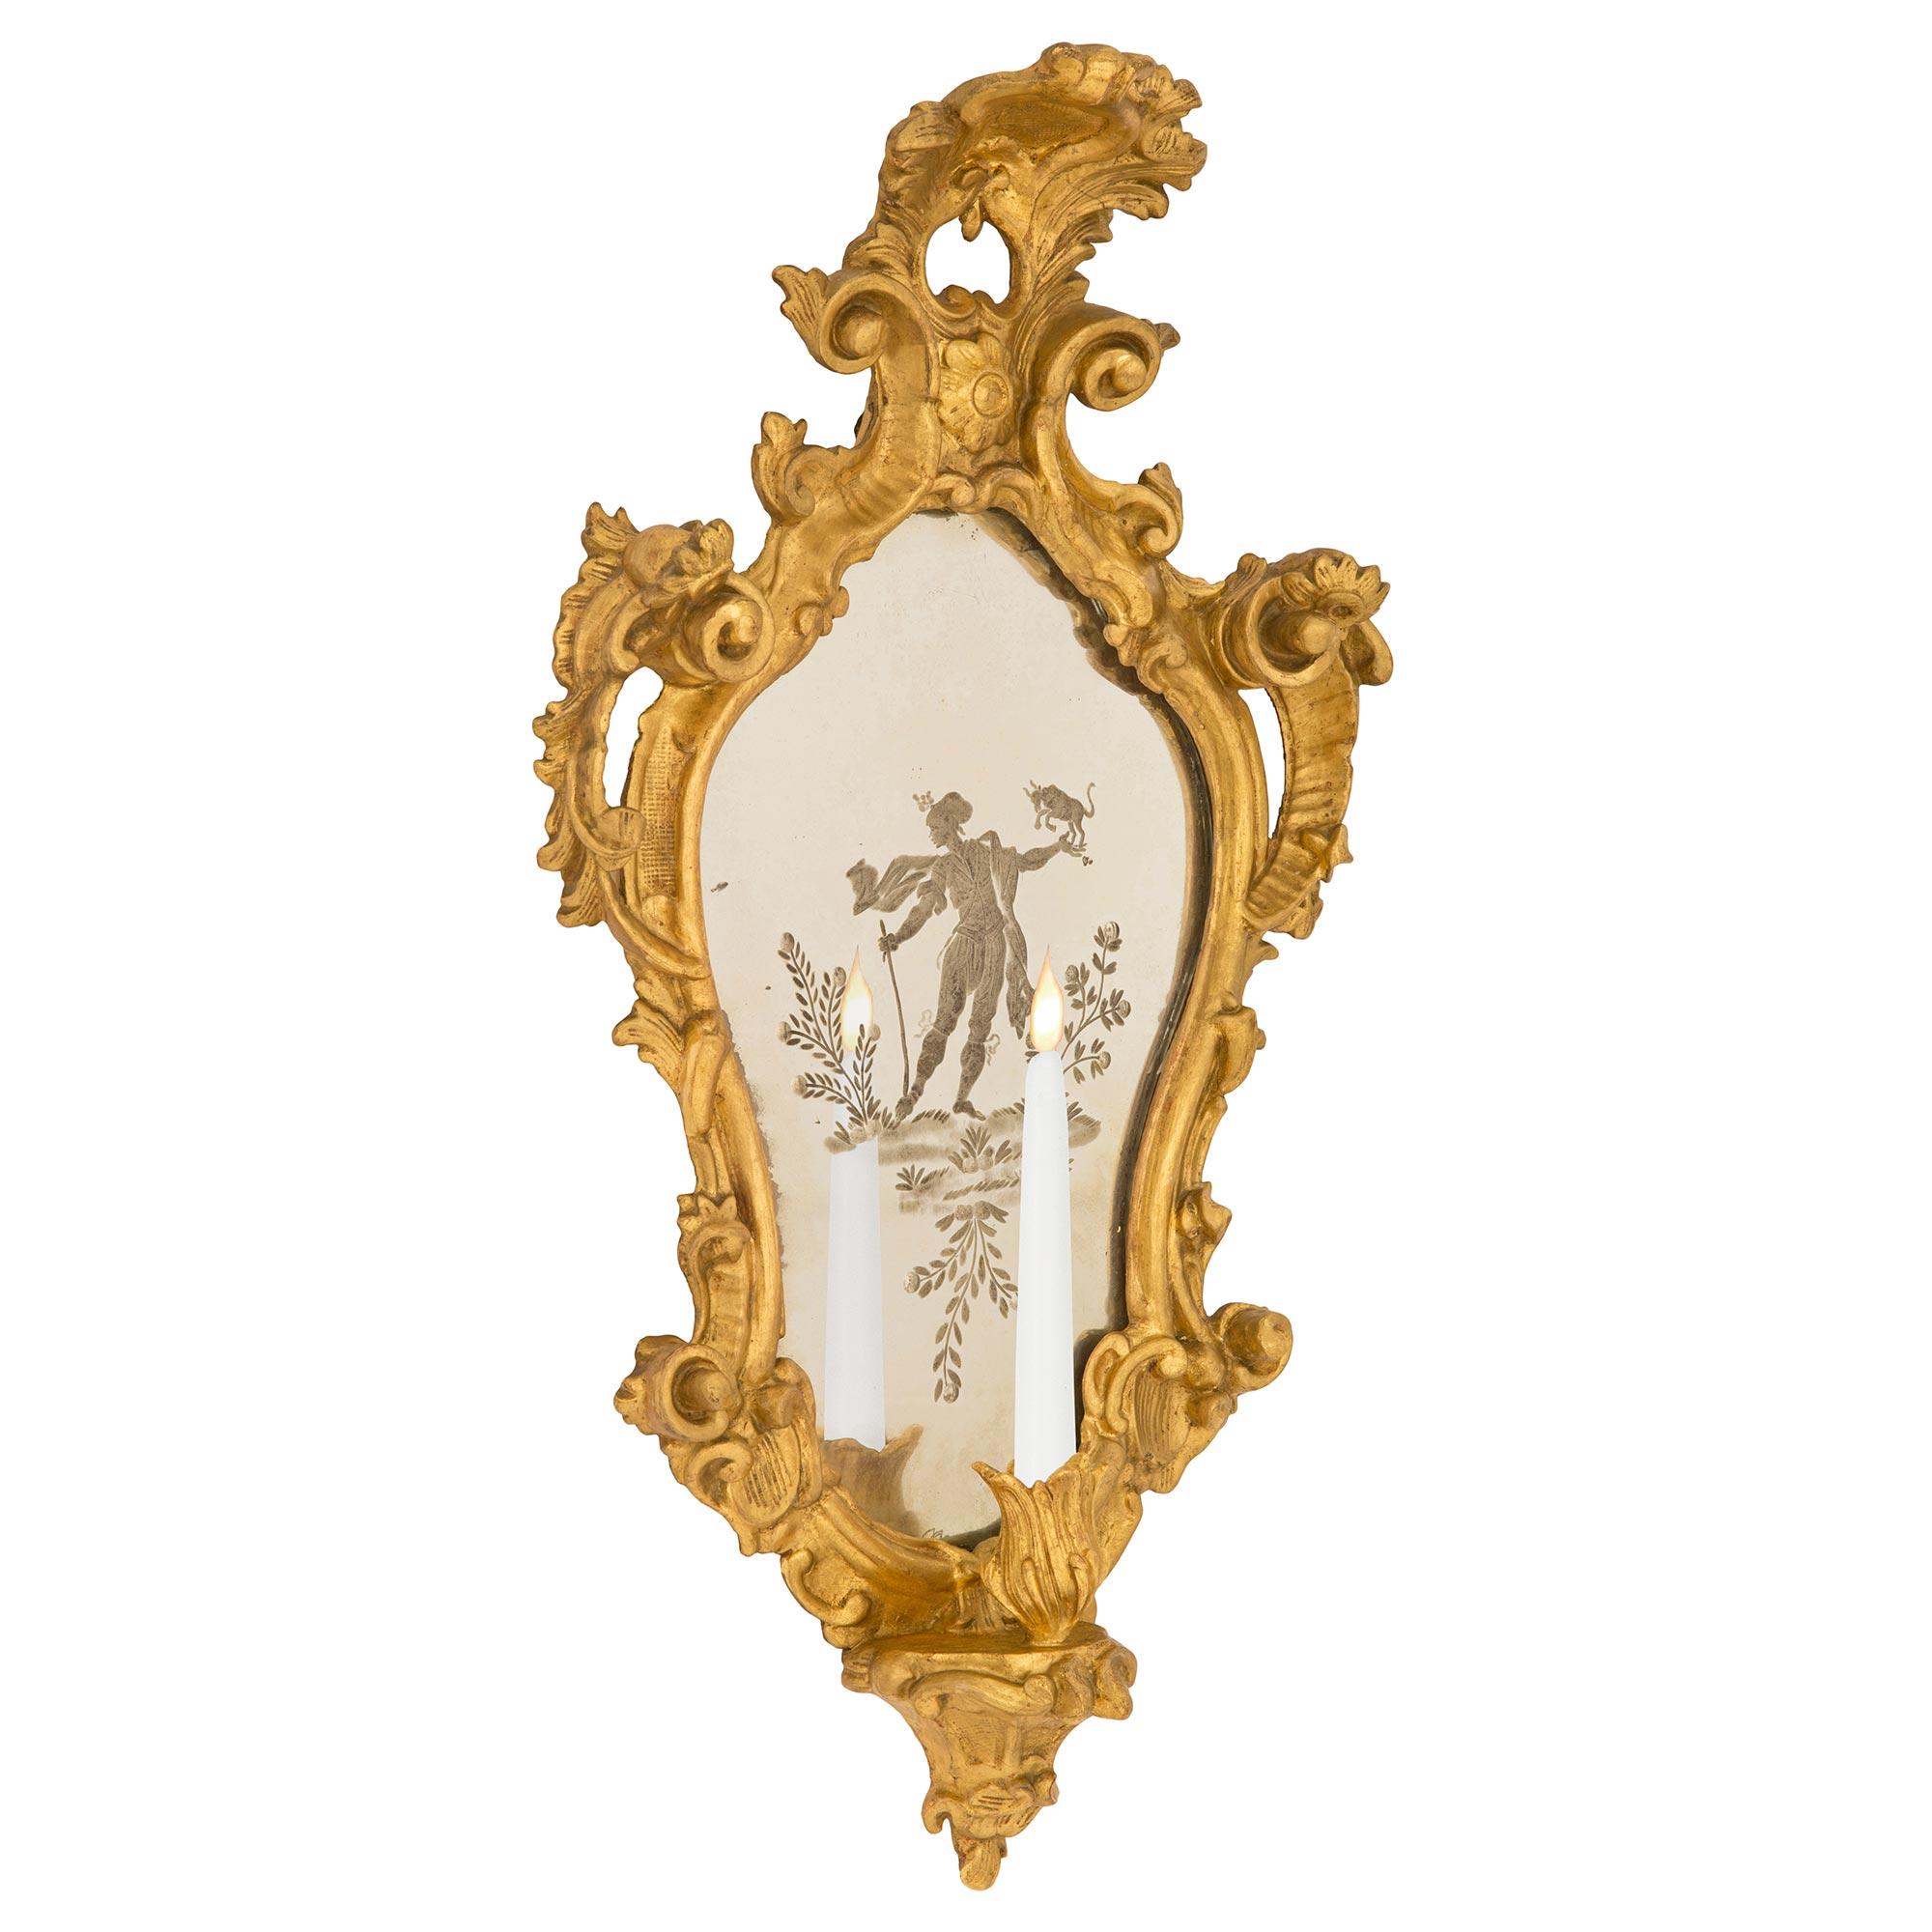 Ein wundervolles Paar italienischer venezianischer Wandleuchter aus dem frühen 19. Jahrhundert aus vergoldetem Holz und geätztem Spiegel. Jede schöne einarmige Leuchte hat einen charmanten, reich geschnitzten Arm mit Blattwerk an der Basis und